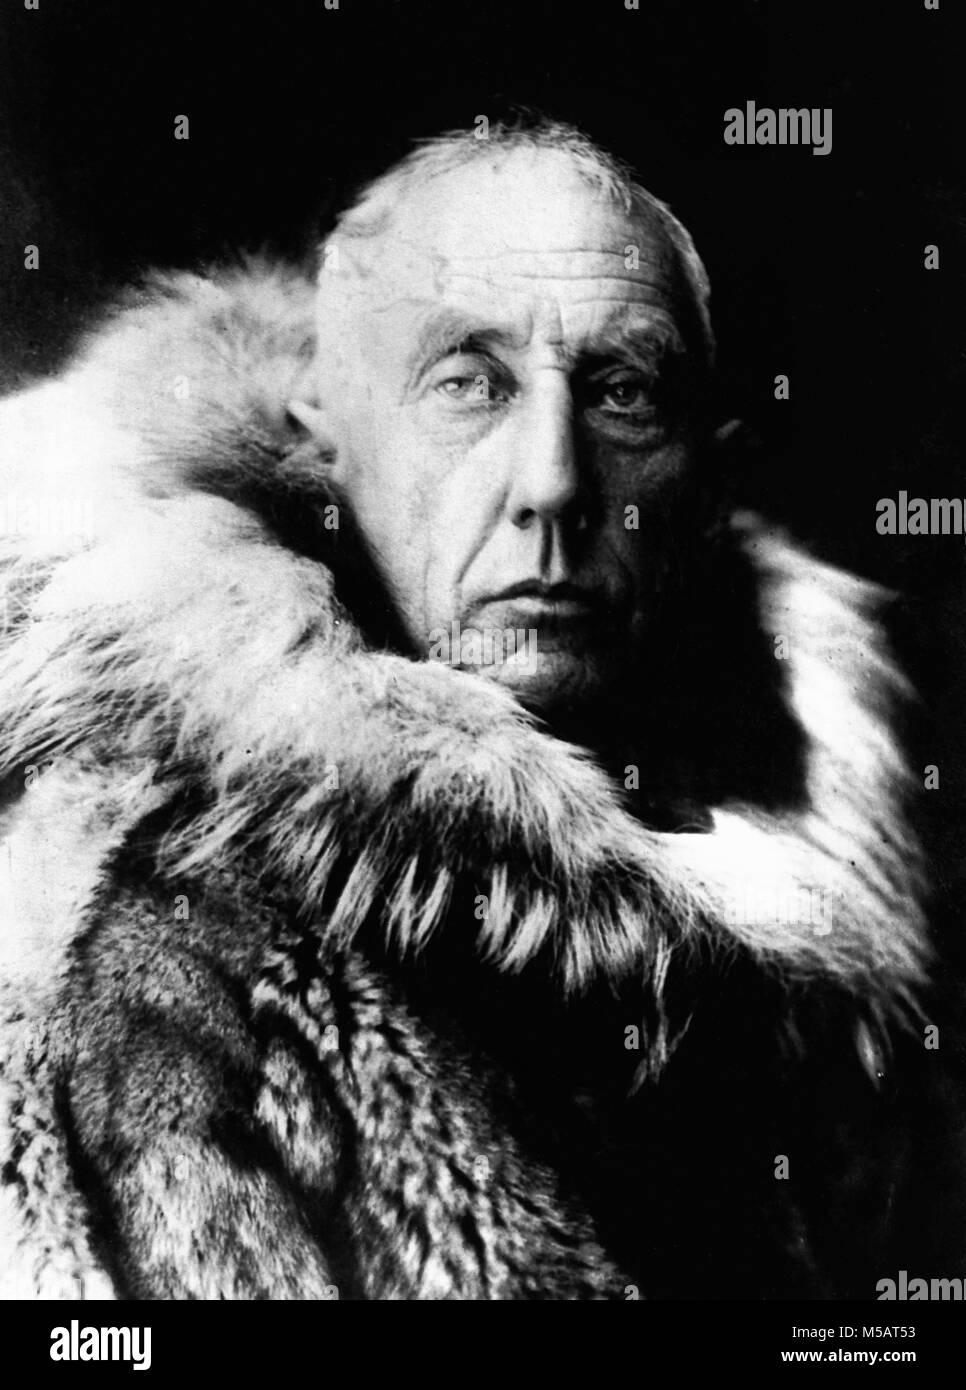 Roald Amundsen, Roald Engelbregt Gravning Amundsen (1872 - 1928) l'explorateur norvégien des régions polaires Banque D'Images